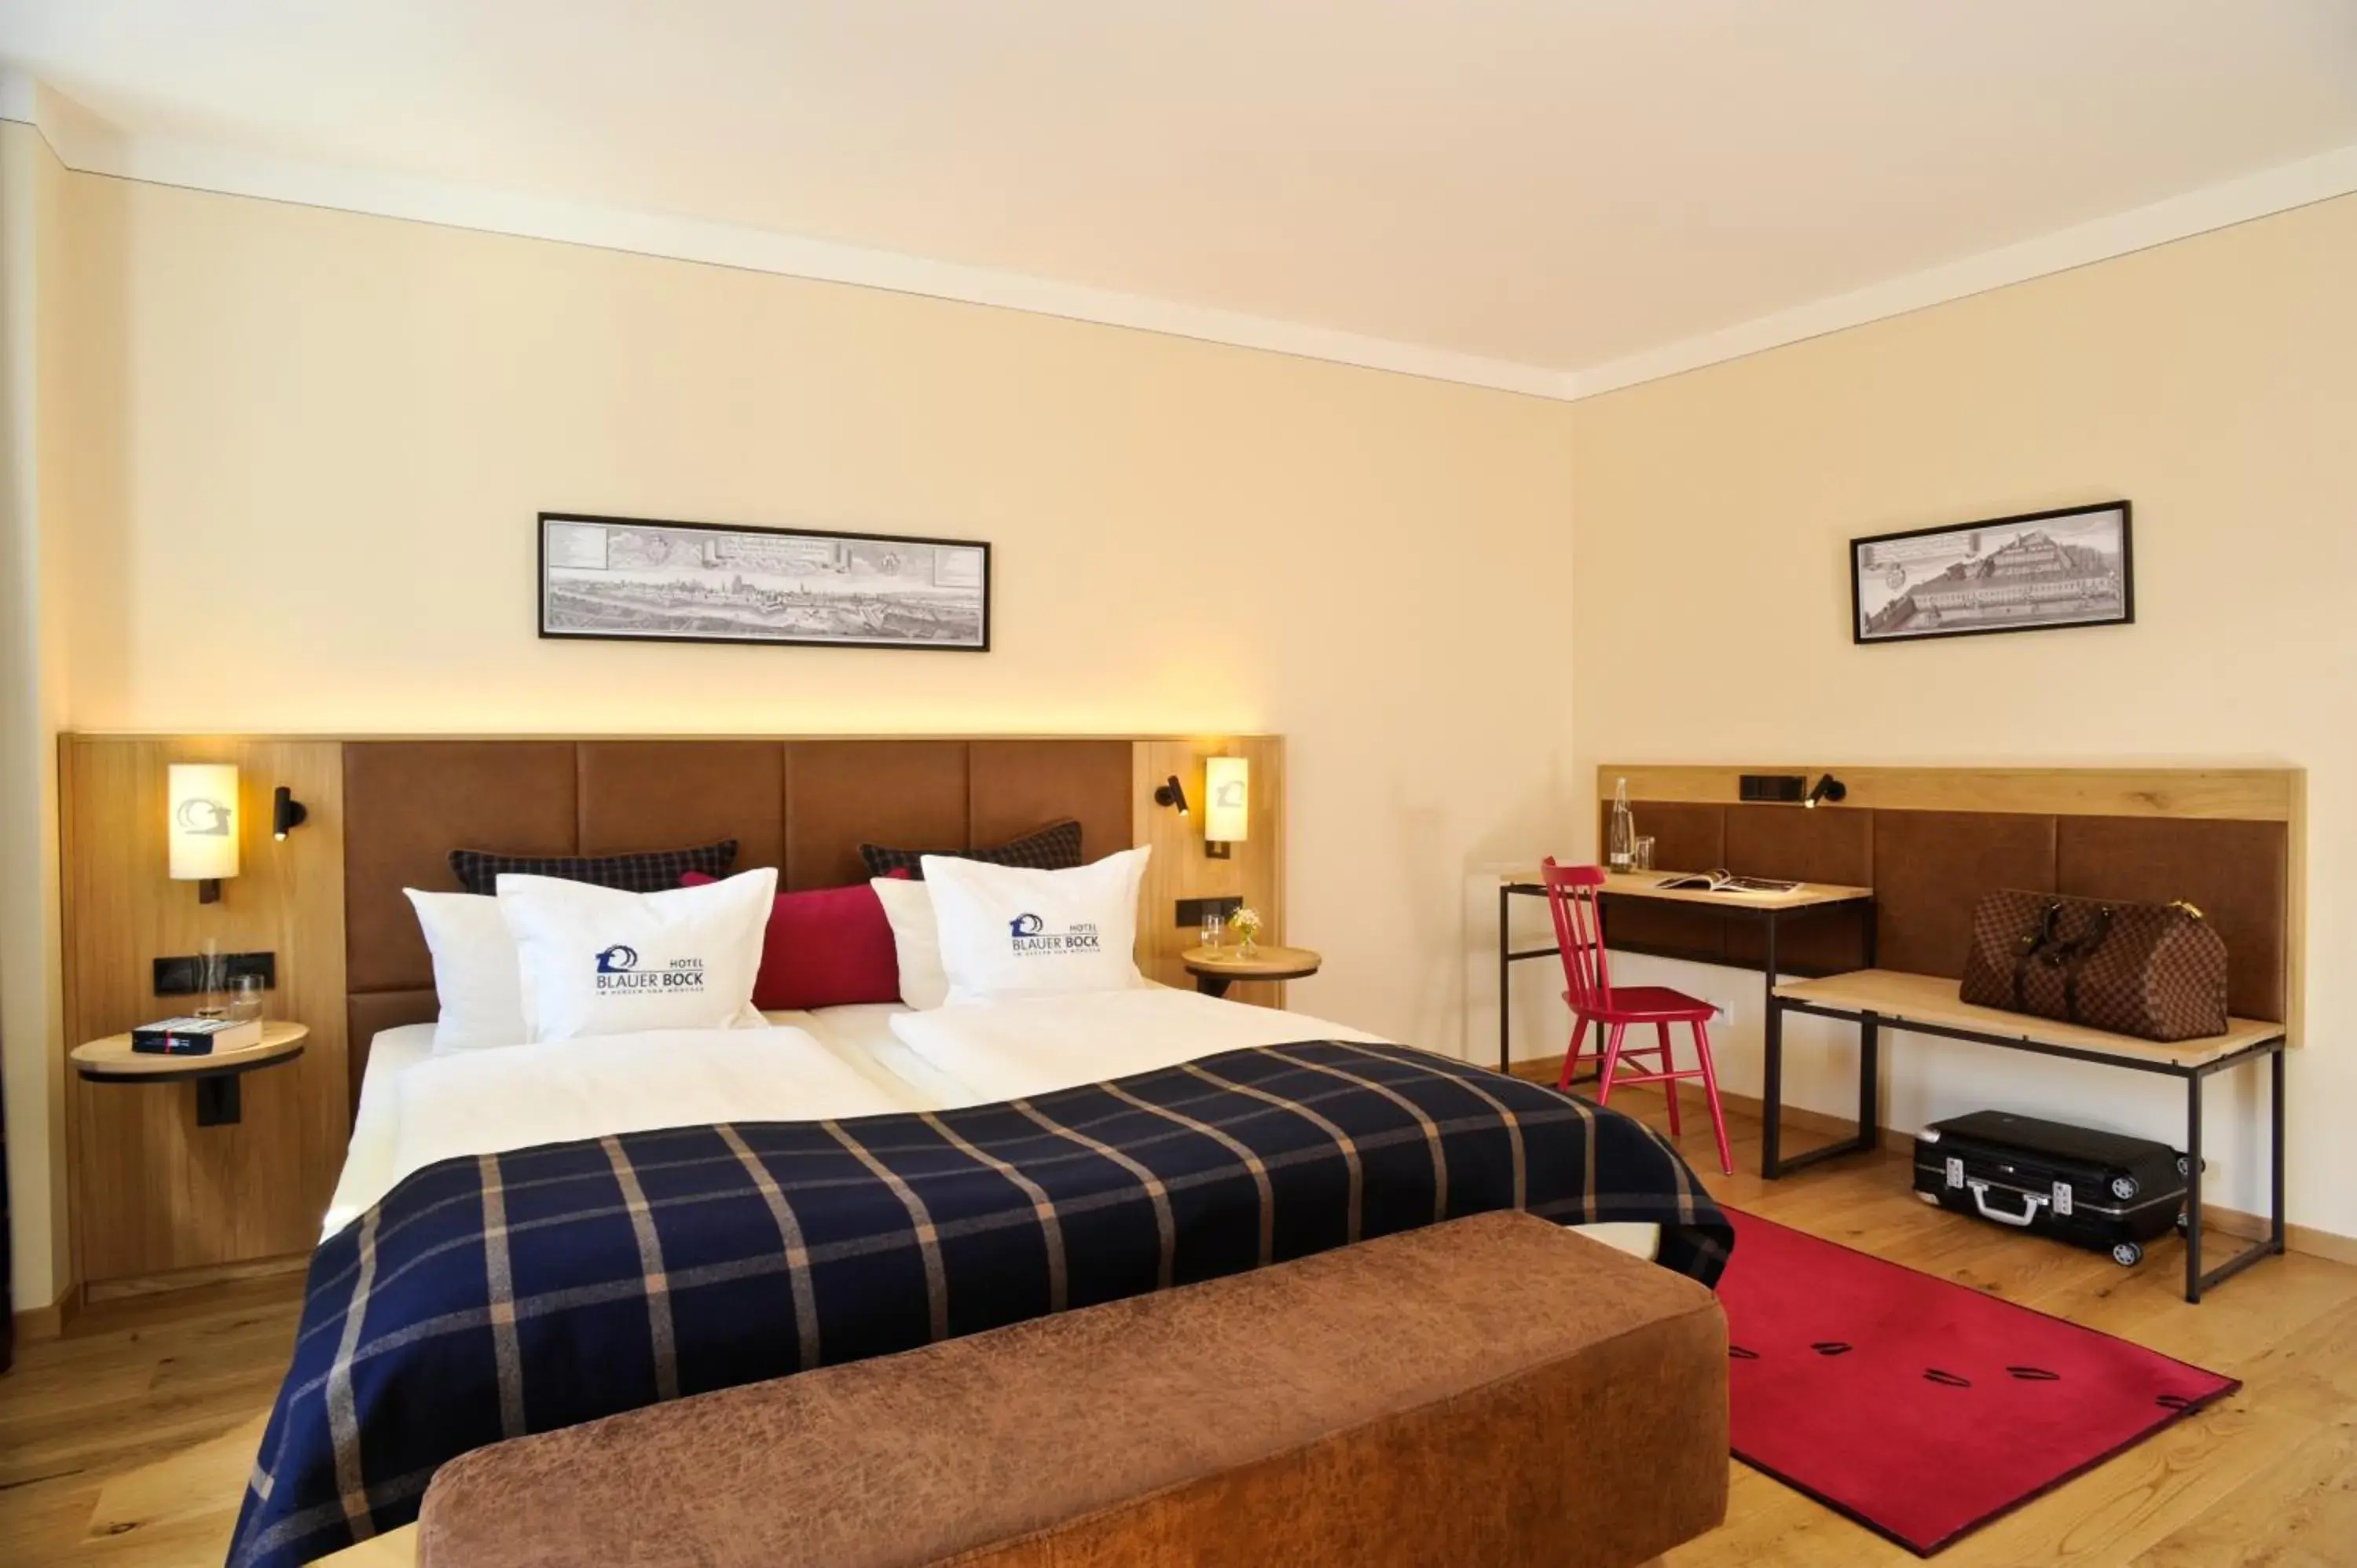 Standard Double Room in Hotel Blauer Bock